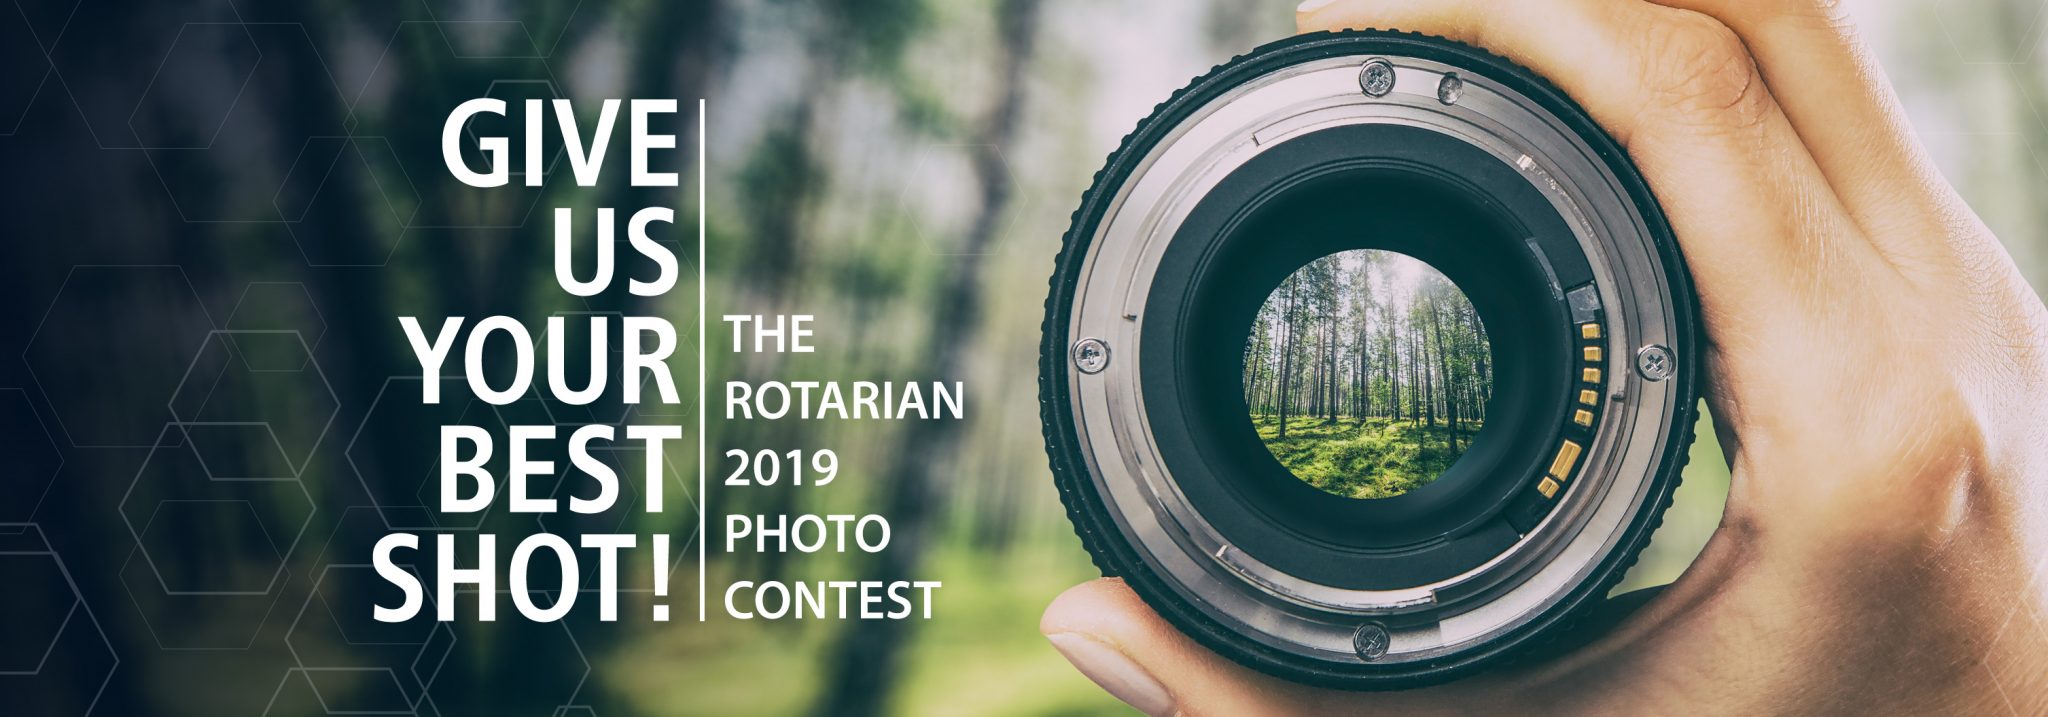 Concurso Fotográfico Rotario 2019